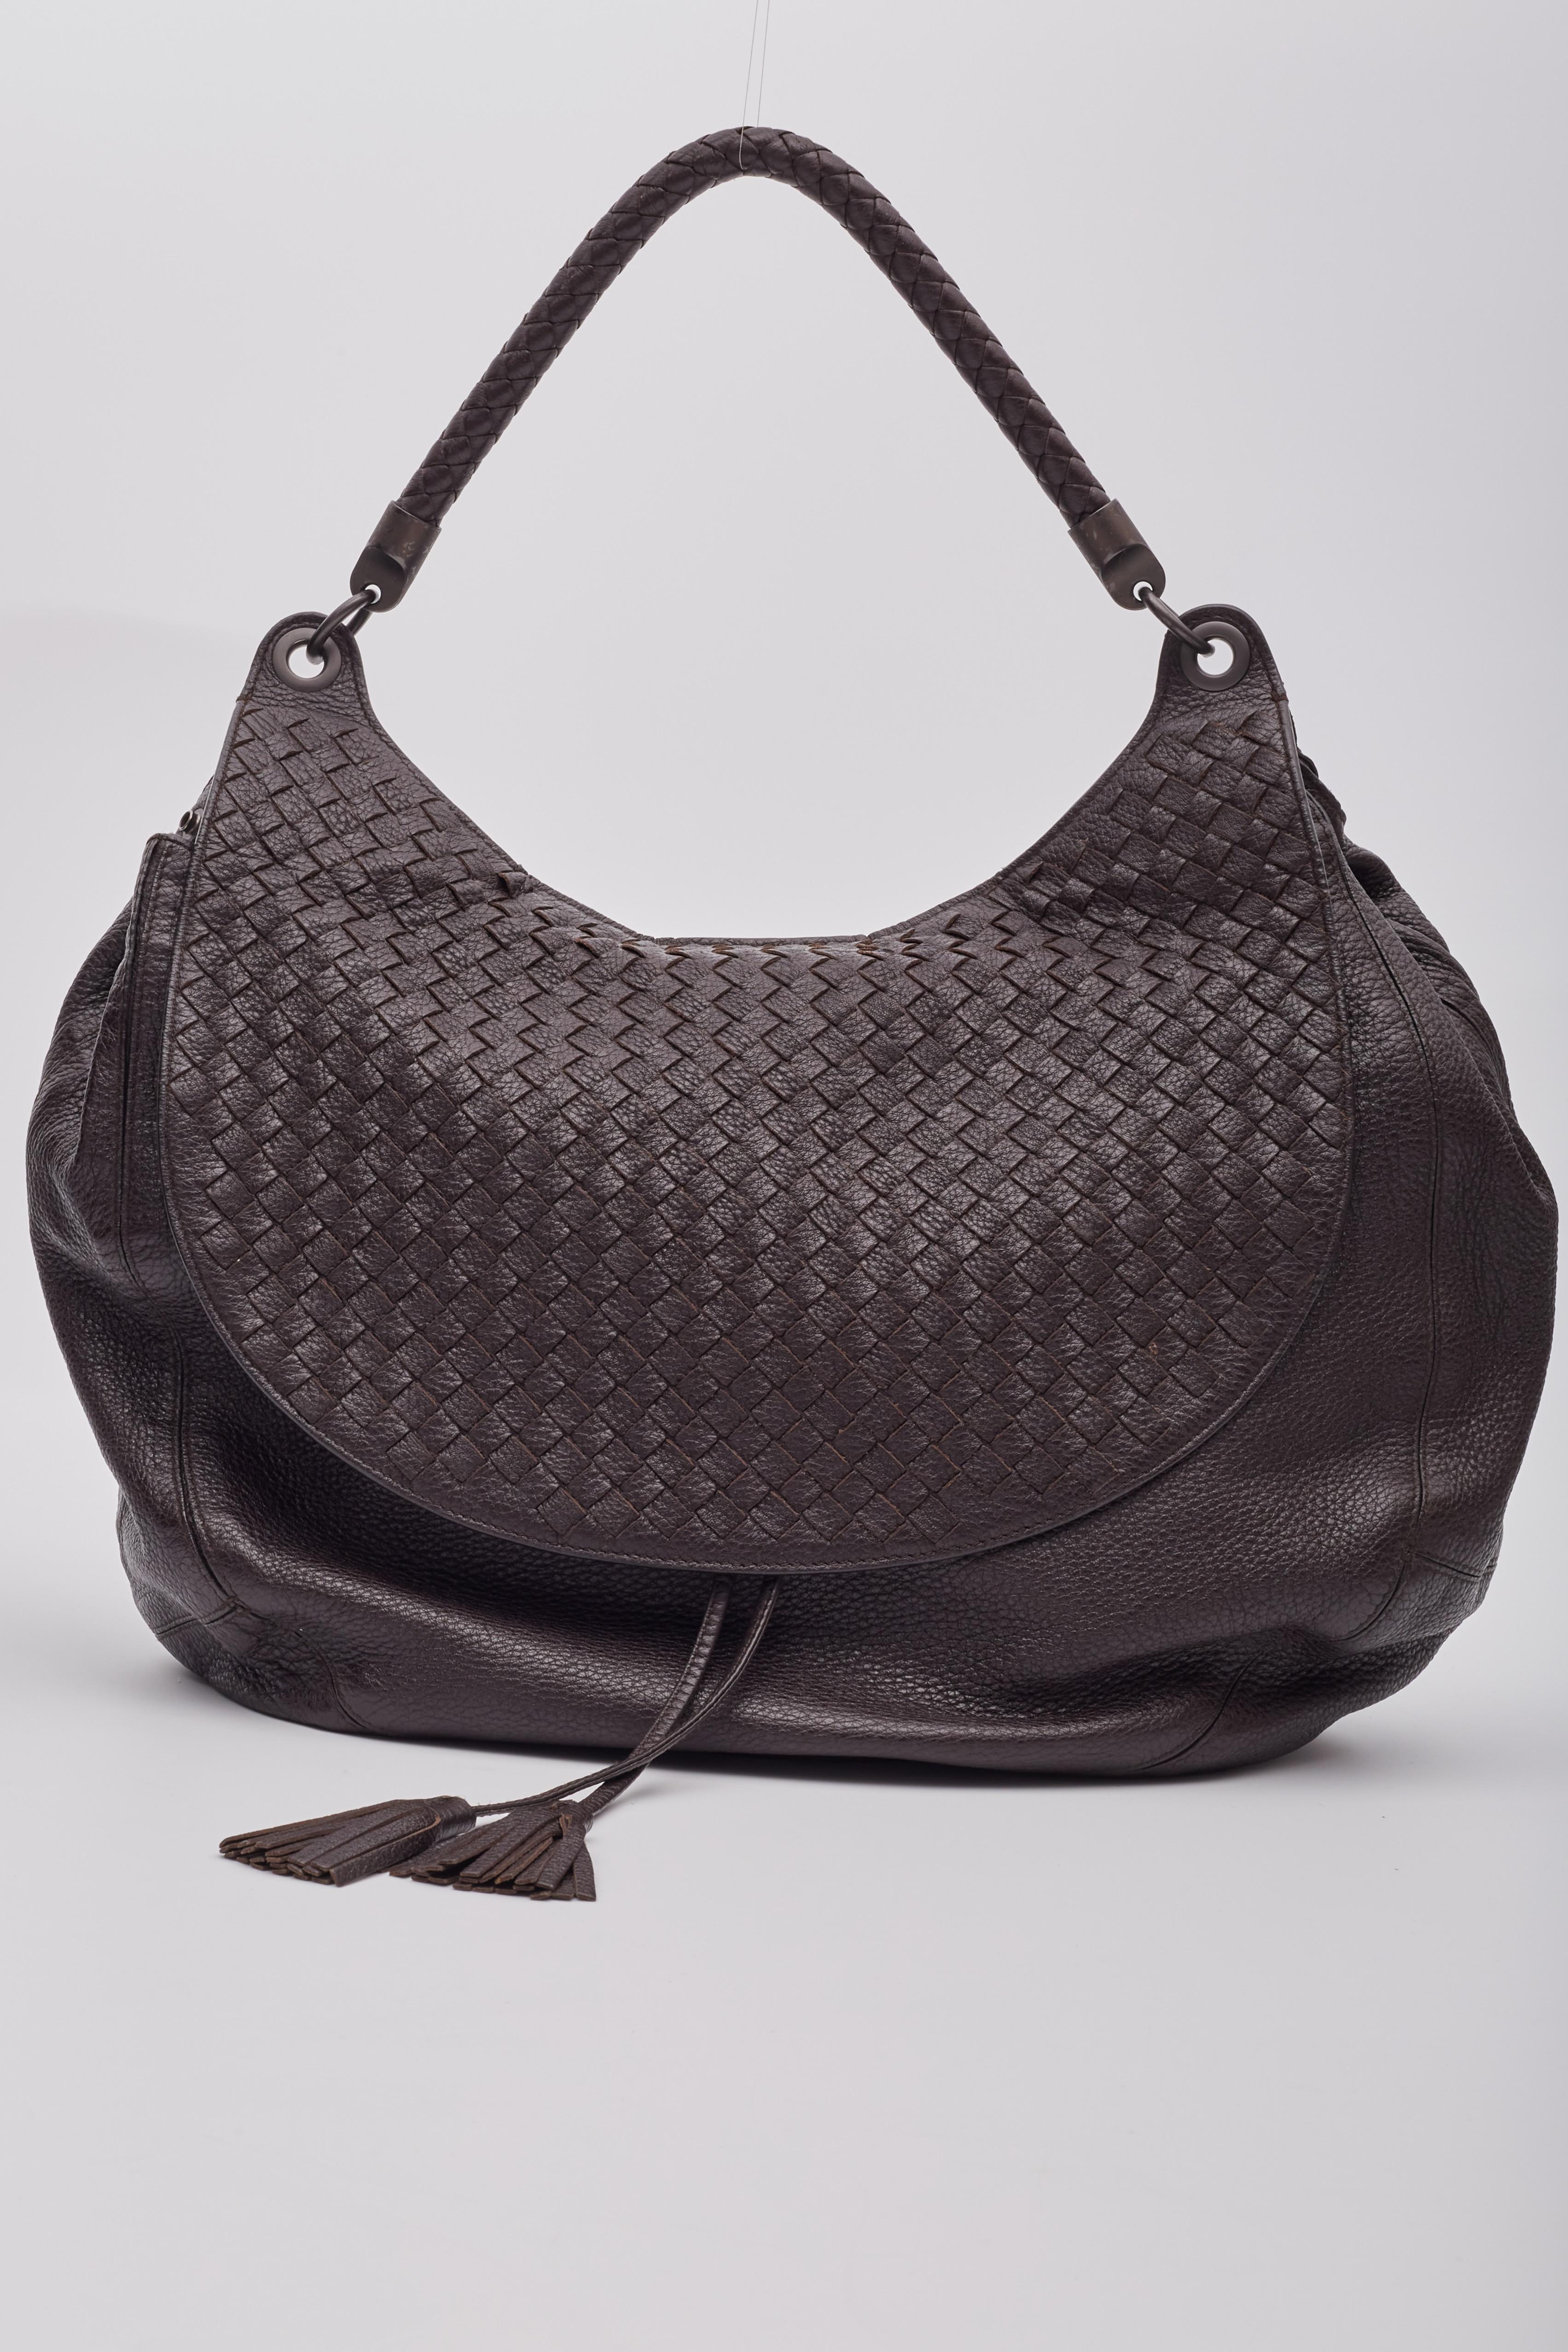 Women's or Men's Bottega Veneta Intrecciato Copper Brown Leather Hobo Bag For Sale